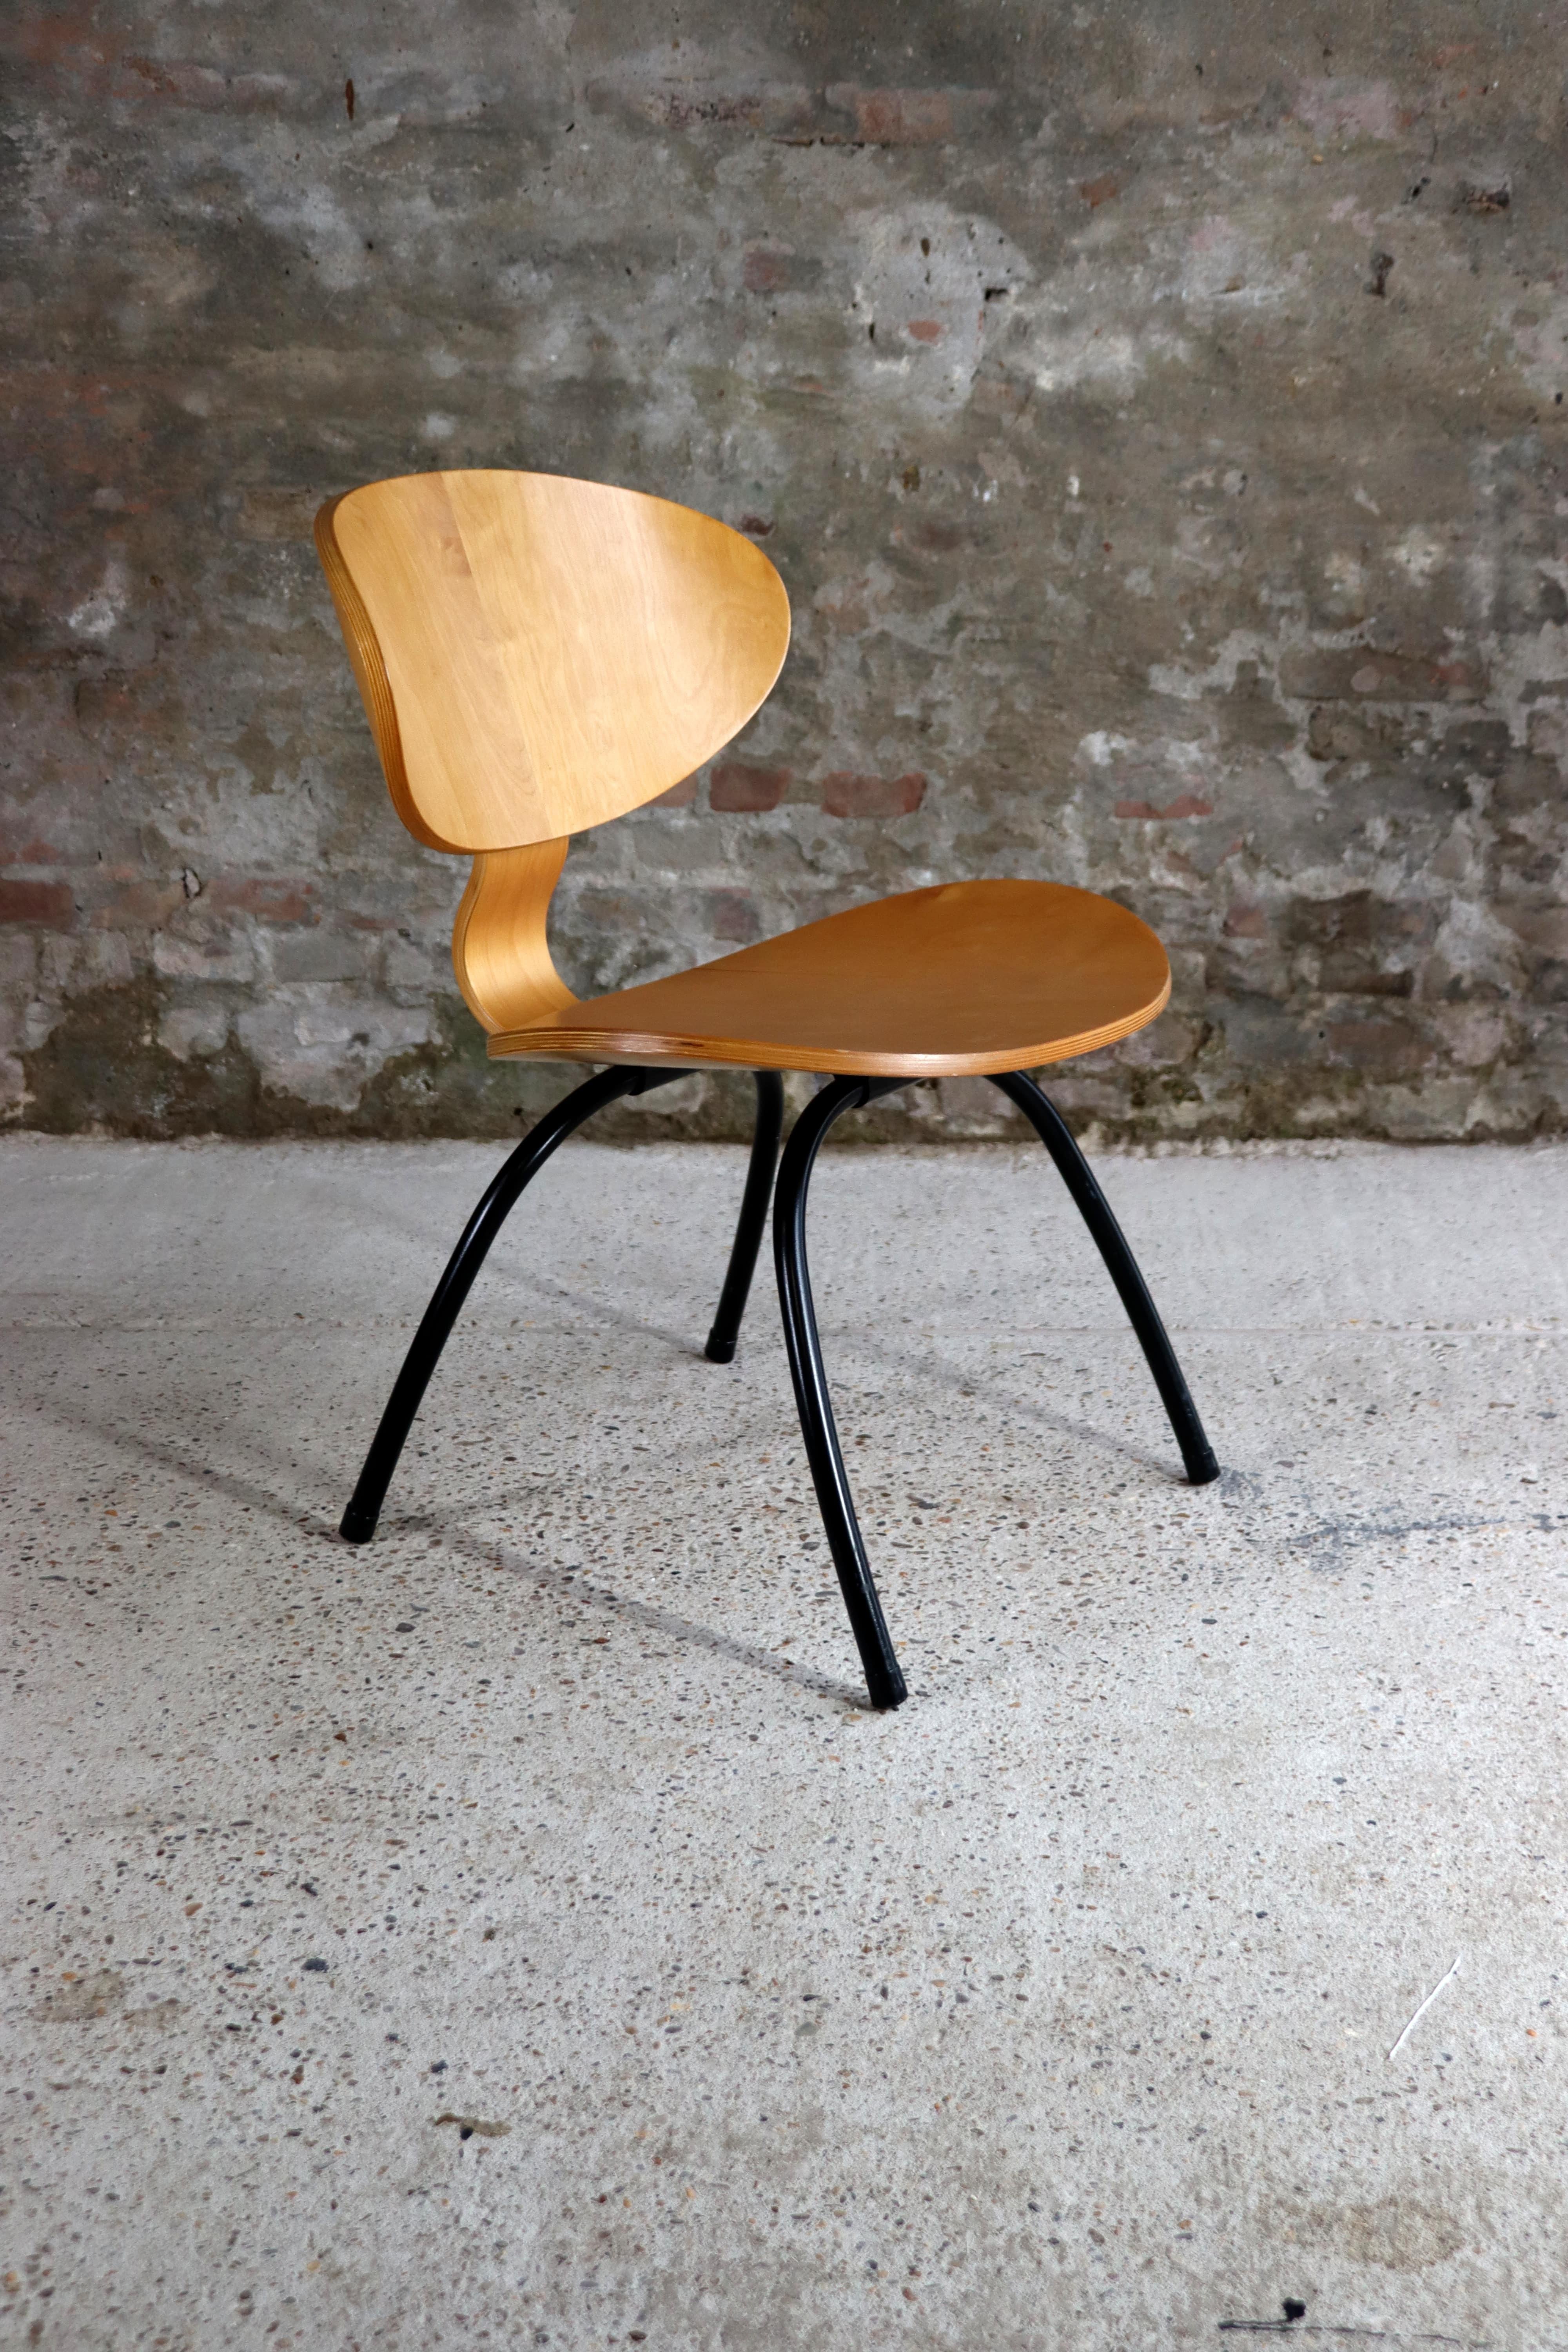 Fauteuil vintage en contreplaqué IKEA des années 1990. Le design s'inspire de la chaise LCW de Charles & Ray Eames. Le siège est en contreplaqué et le cadre est en métal.

Condit : La chaise est dans un très bon état vintage.